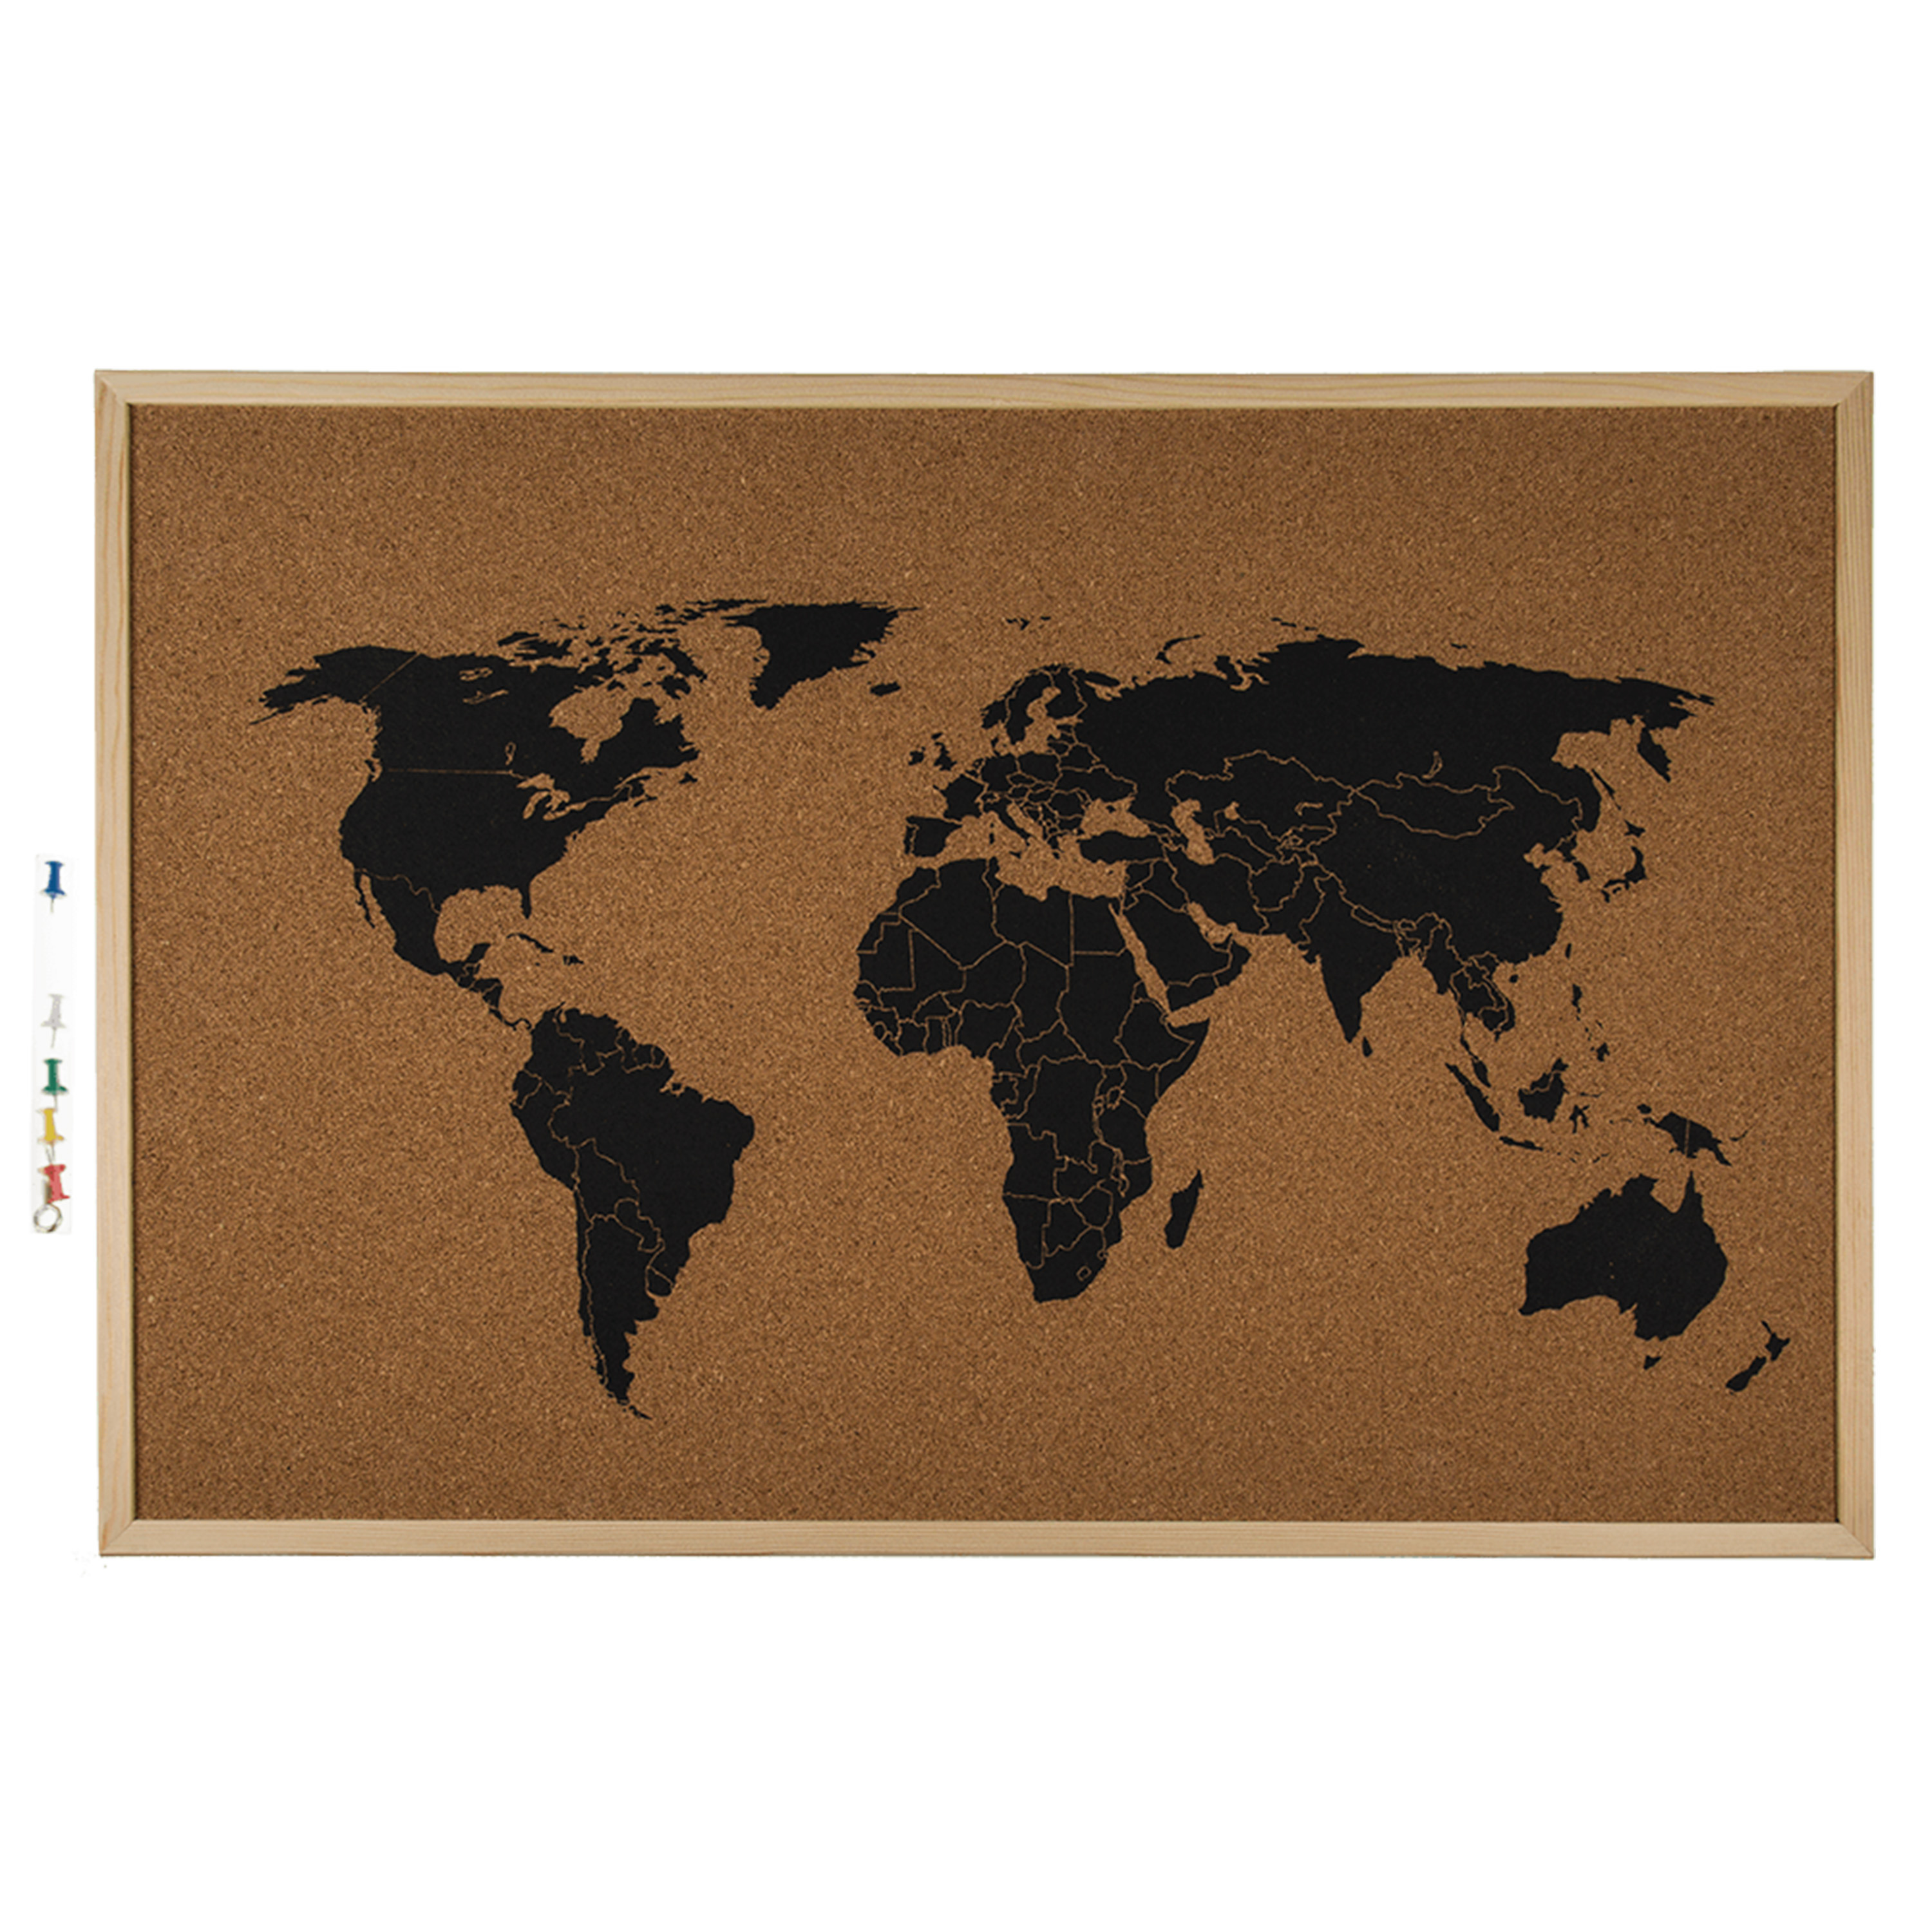 Prikborden met wereldkaart 60 cm